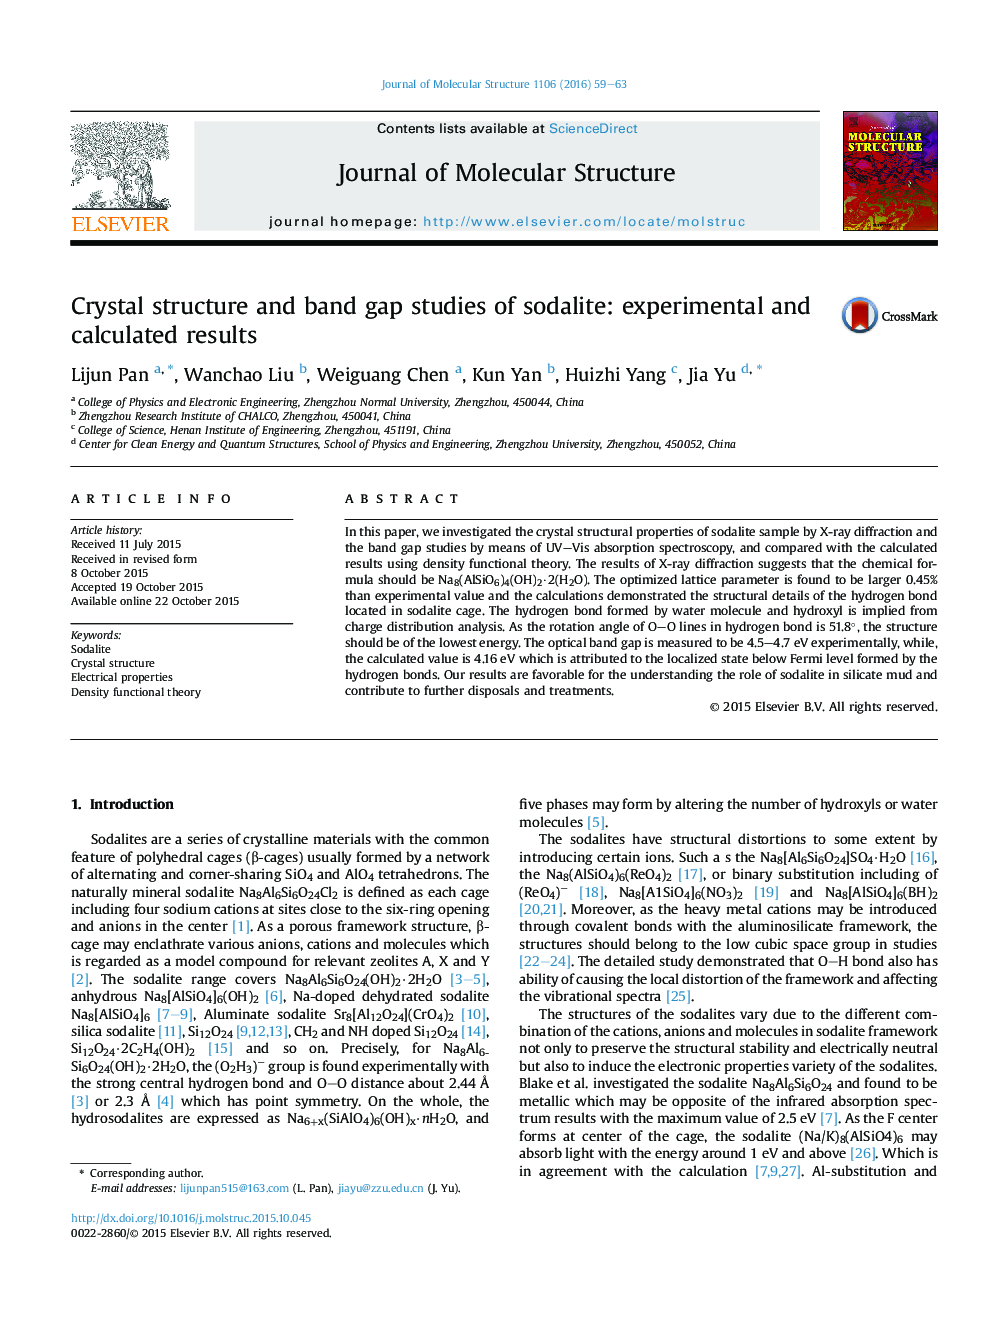 مطالعات ساختاری بلوری و مطالعات شکاف پیوند سدالیت: نتایج آزمایشگاهی و محاسبه شده